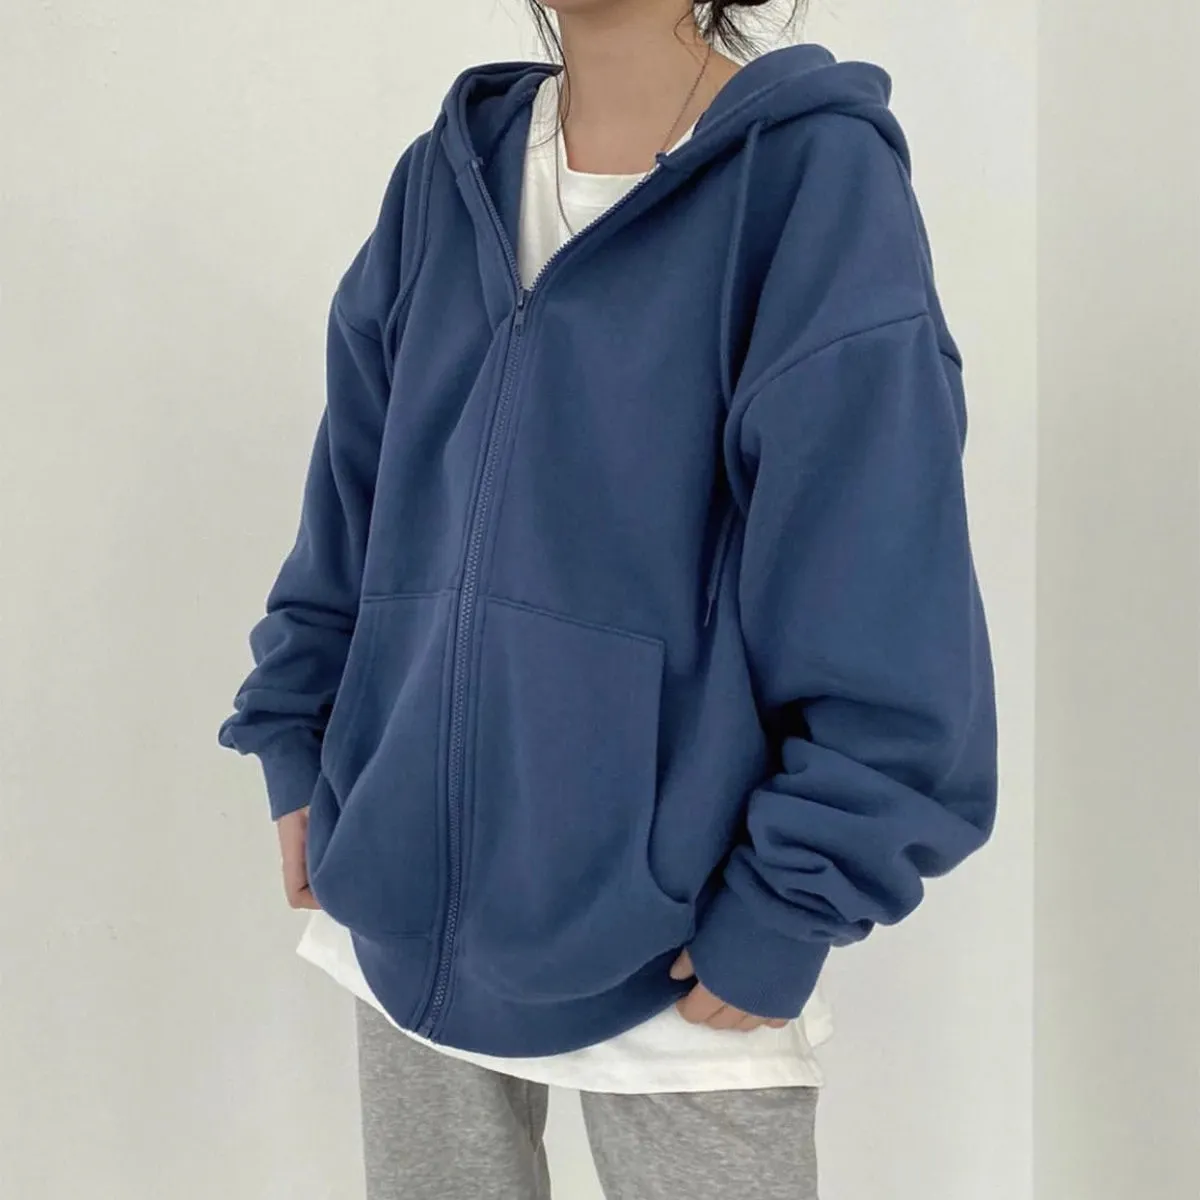 Vrouwen Hoodies Effen Kleur Zip Up Pocket Oversized Harajuku Koreaanse Sweatshirts Vrouwelijke Lange Mouwen Hooded Streetwear Casual Top